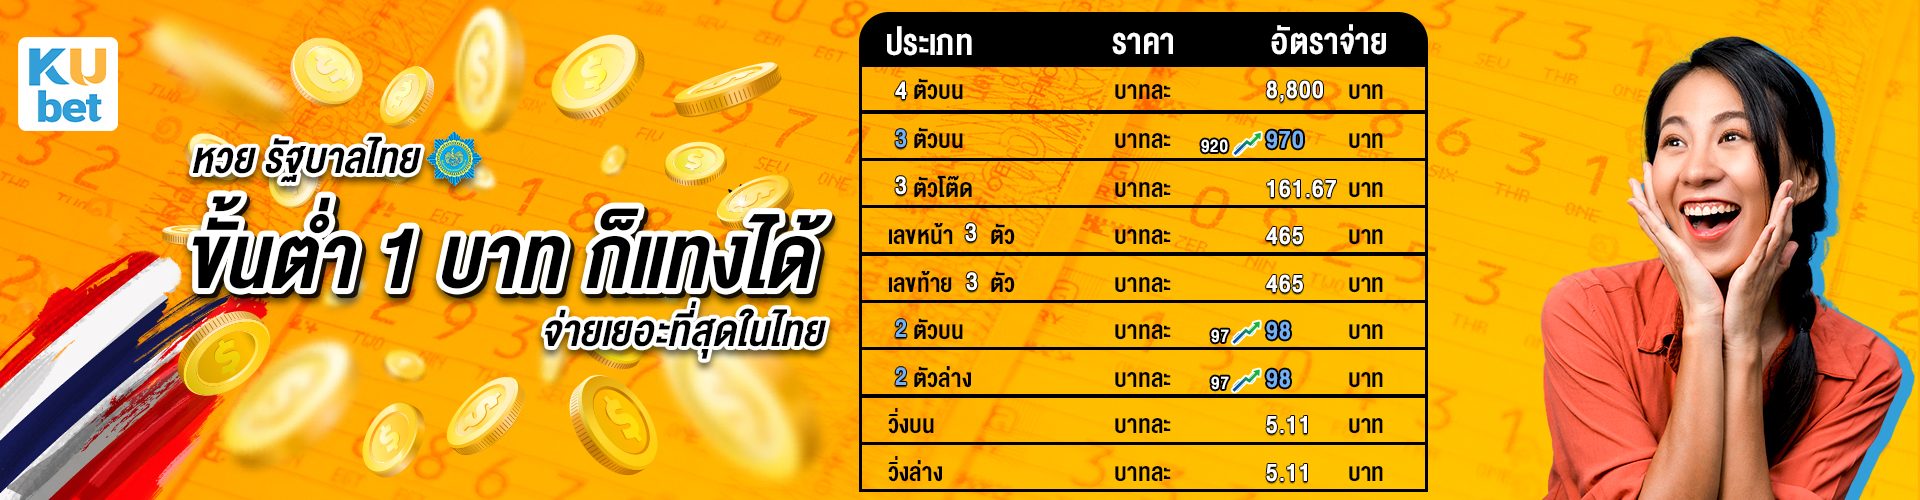 หวยไทยหน้าแรก KUBET จ่ายสูงที่สุดในประเทศไทย